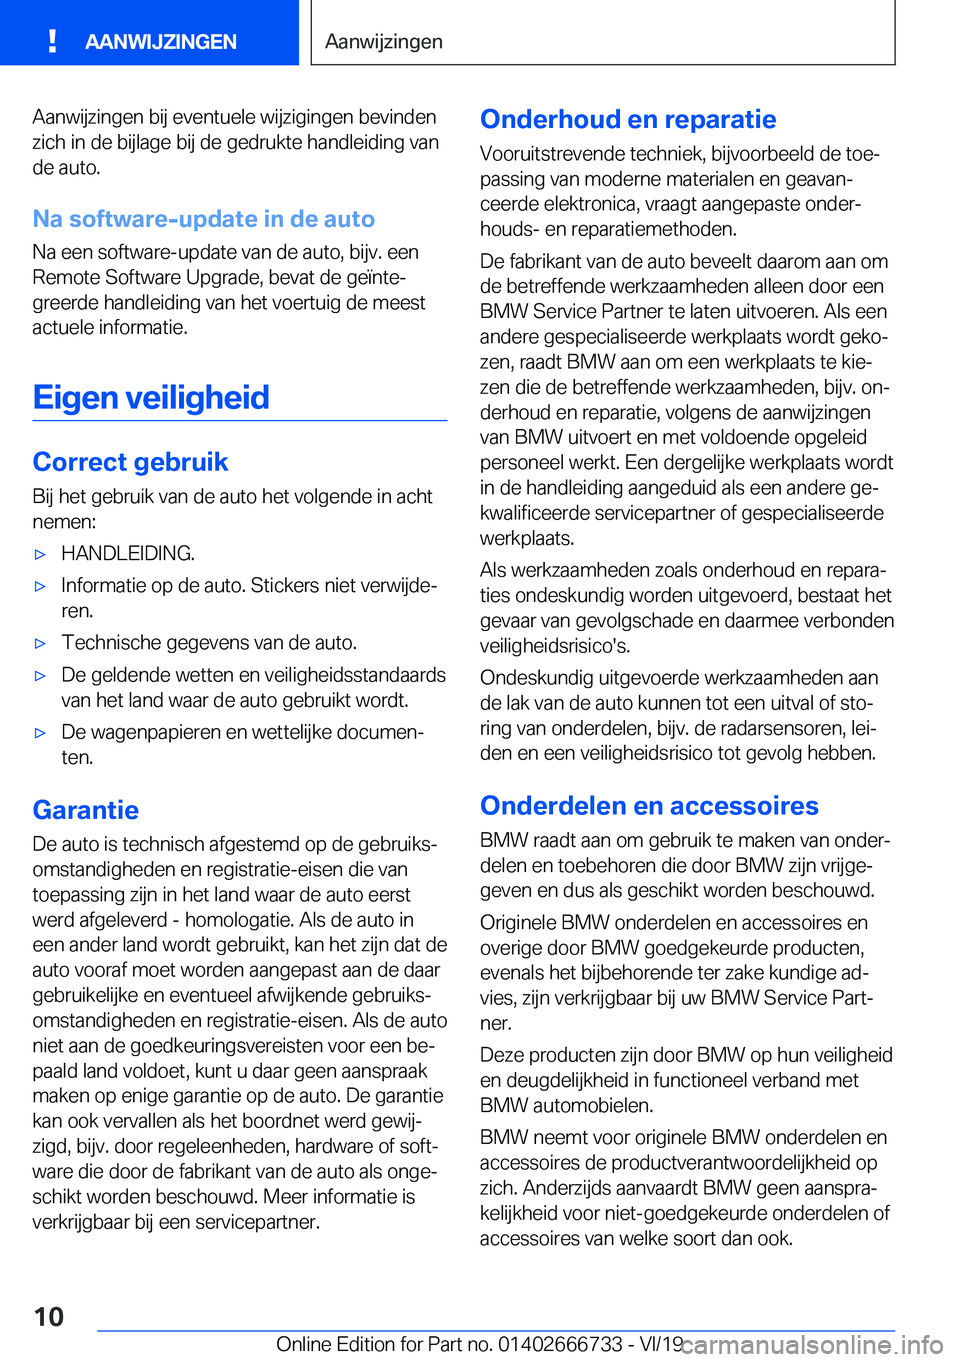 BMW M5 2020  Instructieboekjes (in Dutch) �A�a�n�w�i�j�z�i�n�g�e�n��b�i�j��e�v�e�n�t�u�e�l�e��w�i�j�z�i�g�i�n�g�e�n��b�e�v�i�n�d�e�n�z�i�c�h��i�n��d�e��b�i�j�l�a�g�e��b�i�j��d�e��g�e�d�r�u�k�t�e��h�a�n�d�l�e�i�d�i�n�g��v�a�n
�d�e�